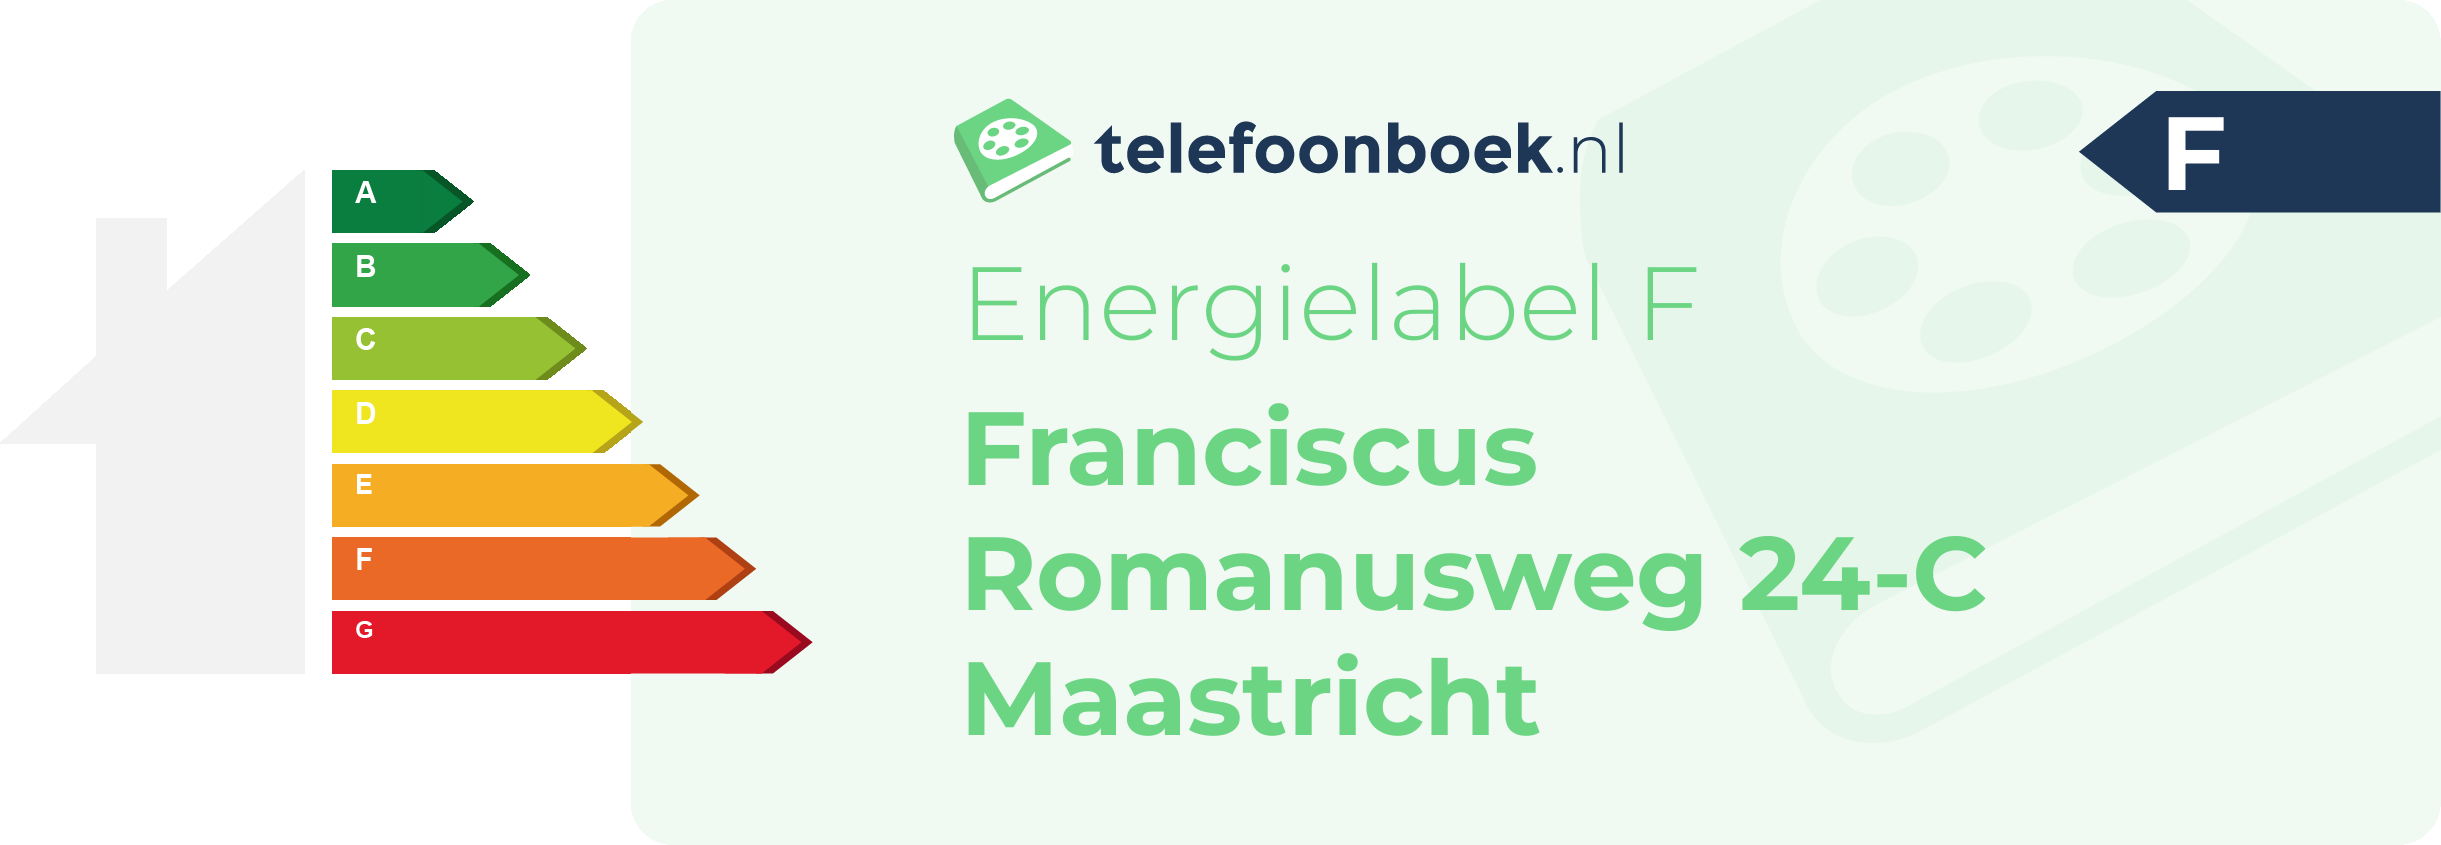 Energielabel Franciscus Romanusweg 24-C Maastricht